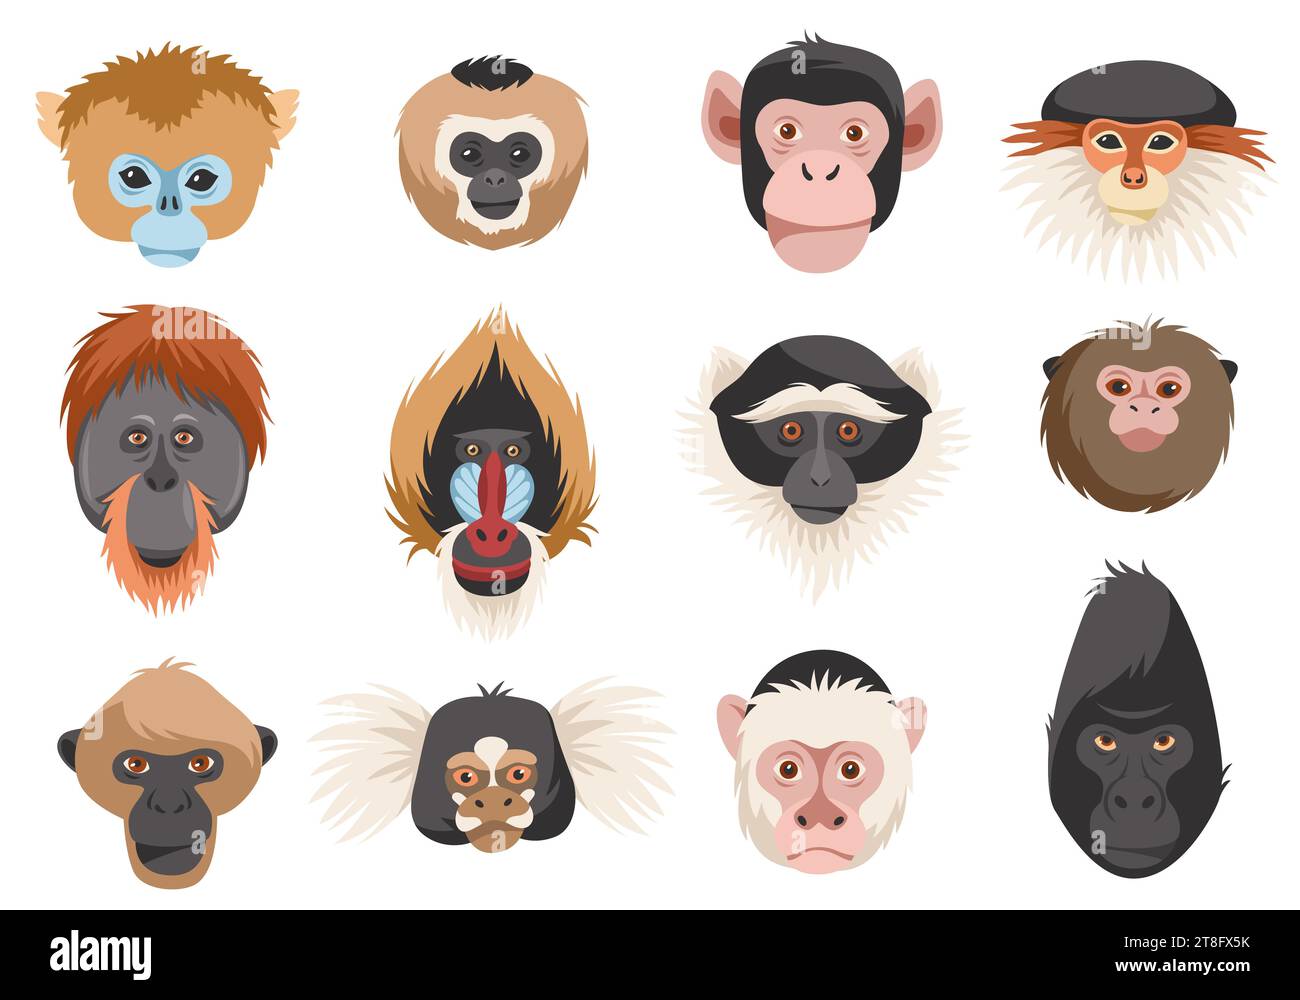 Cabezas de monos. Retratos de primates de diferentes razas, divertidos animales exóticos, chimpancés, orangután, gorila y mandril. Habitantes de la selva de dibujos animados plana Ilustración del Vector